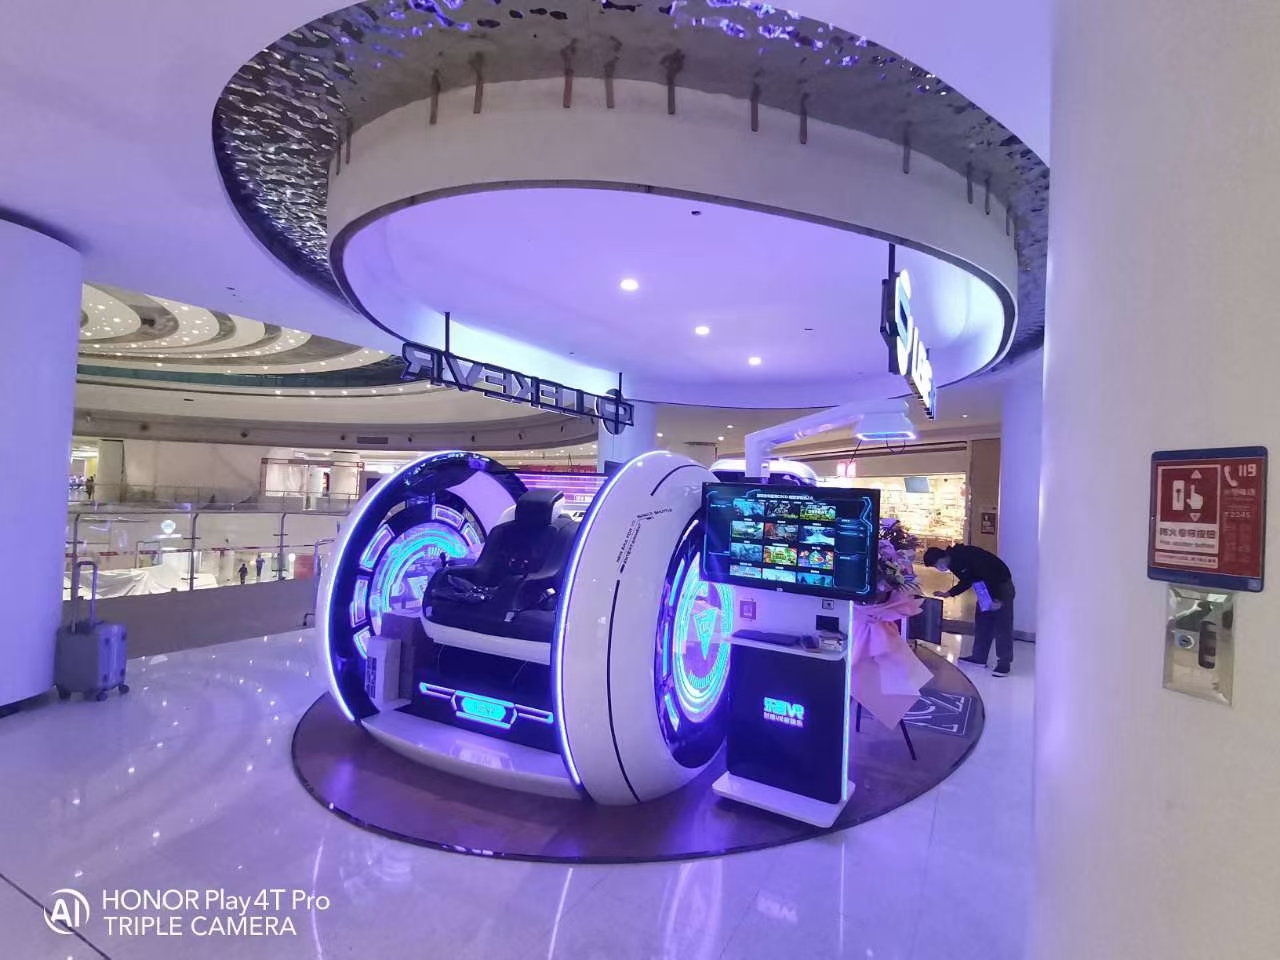 LEKE VR Space Shuttle2.0 Virtual-Reality-Vergnügungspark 9D Egg Chair Cinema Machine